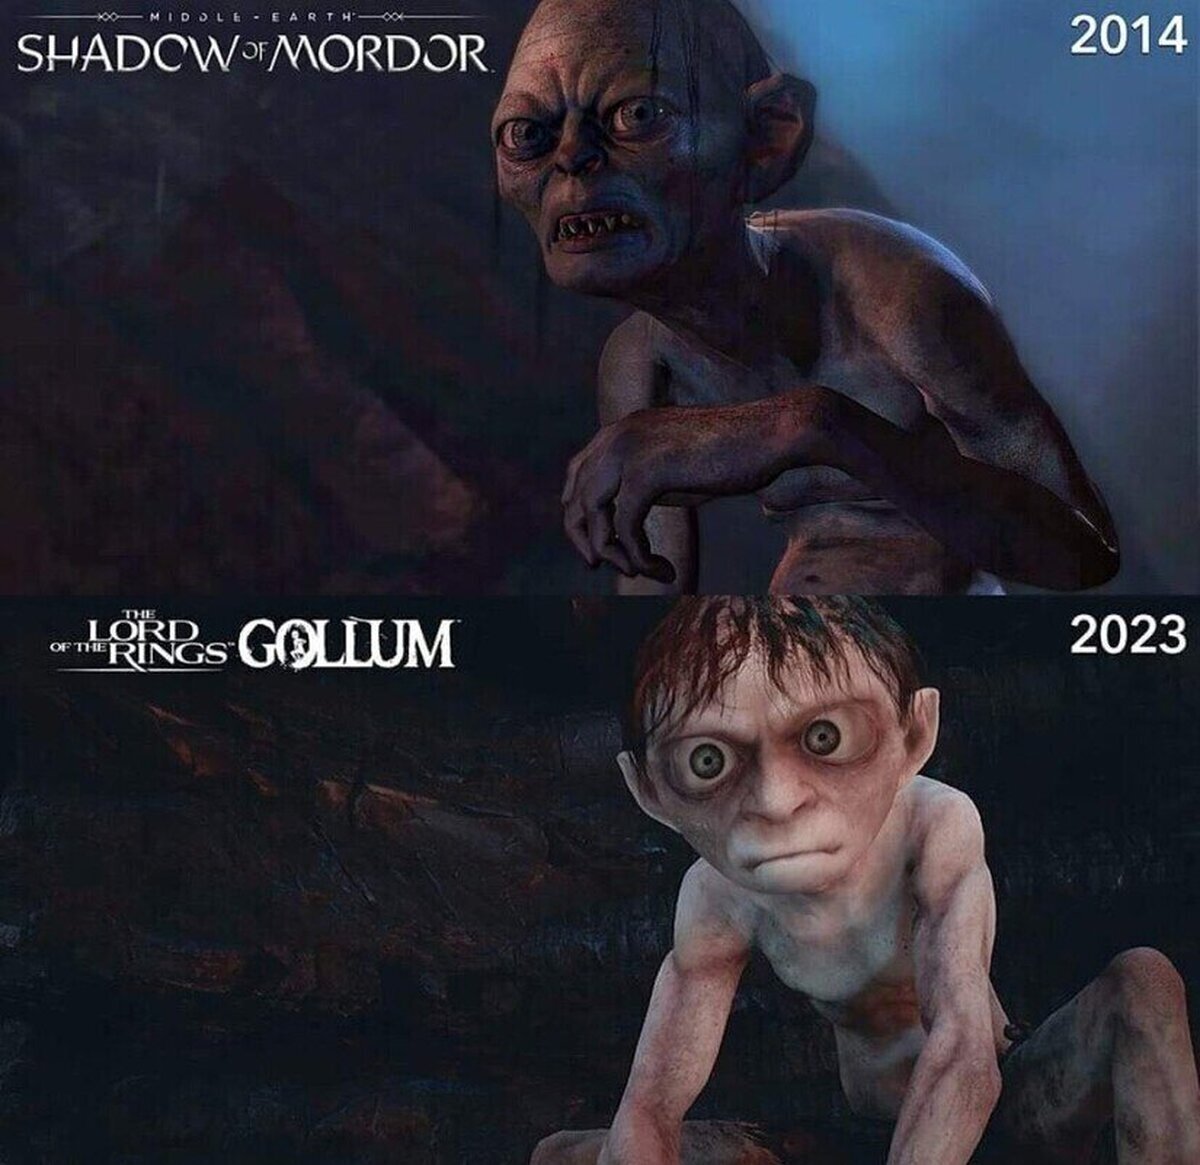 Increíble como un juego de 2014 se ve mejor que el de Gollum, que ha salido en 2023.